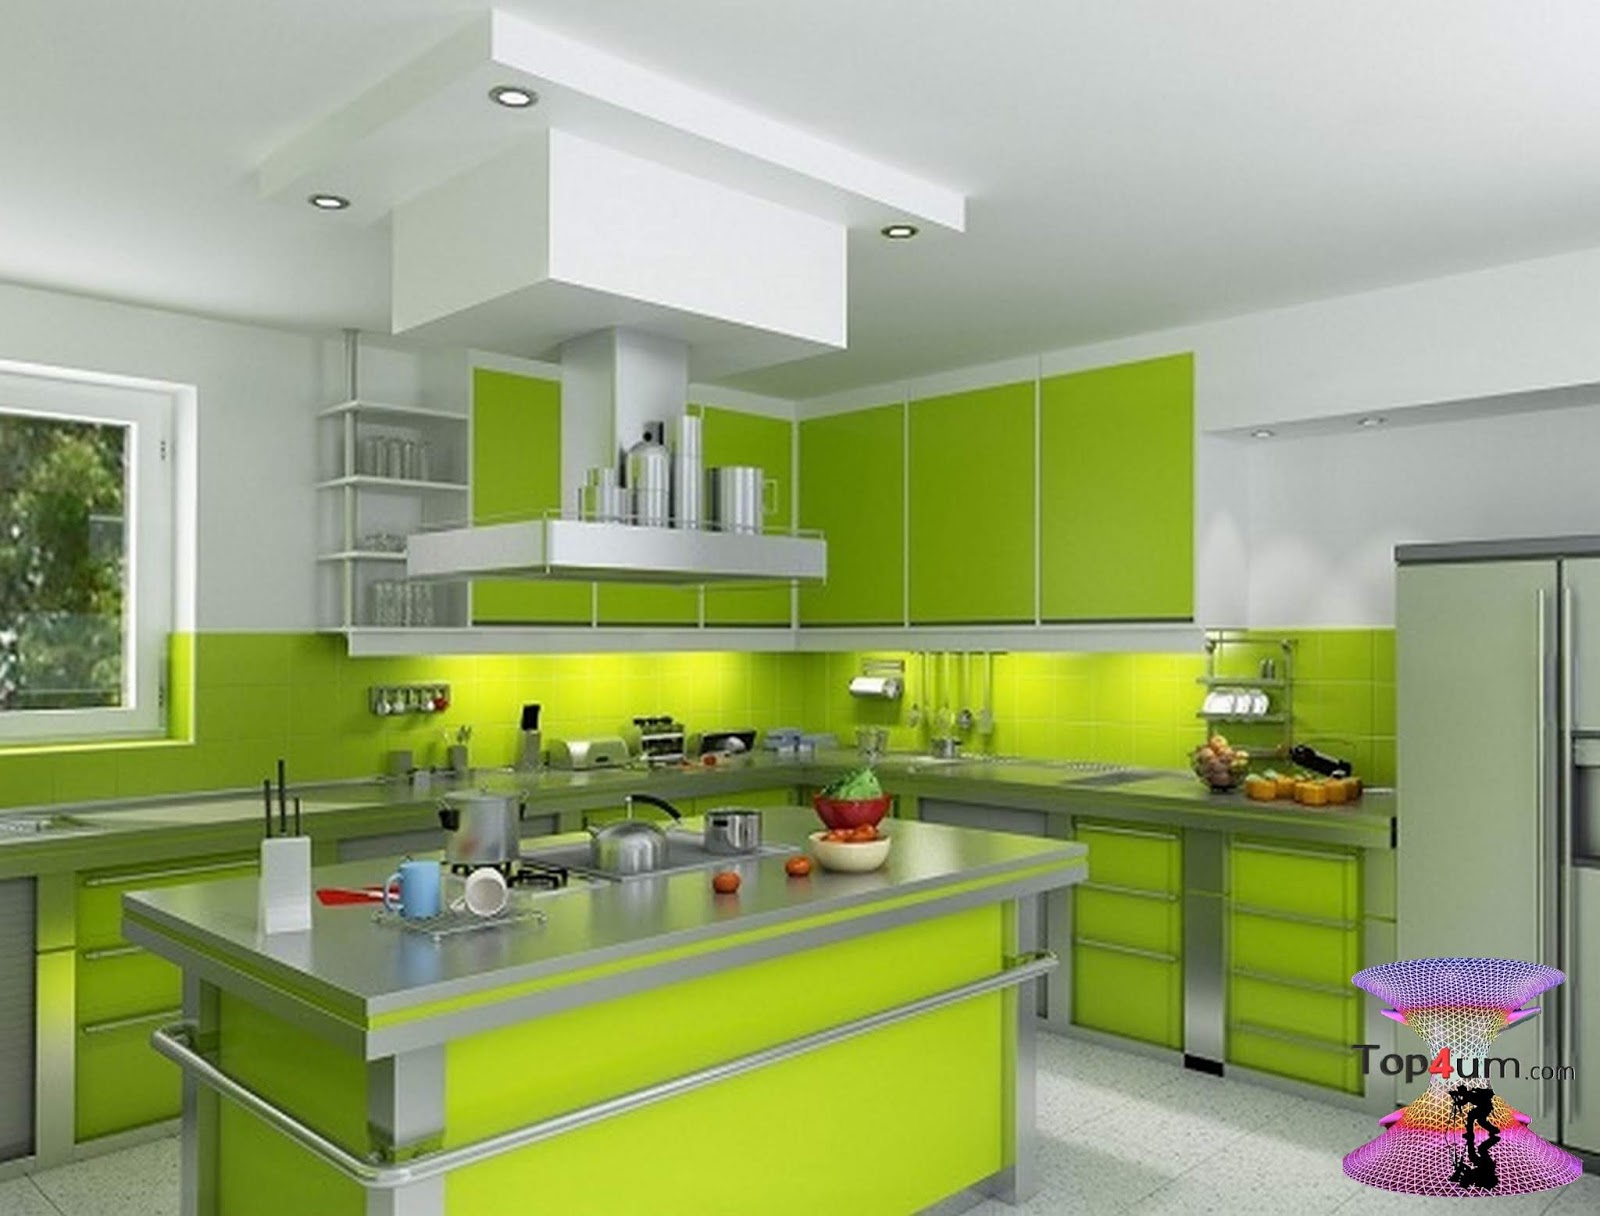 Желто зеленая кухня. Кухонный интерьер. Кухня зеленого цвета. Кухня в зеленом стиле. Кухня в зеленых оттенках.